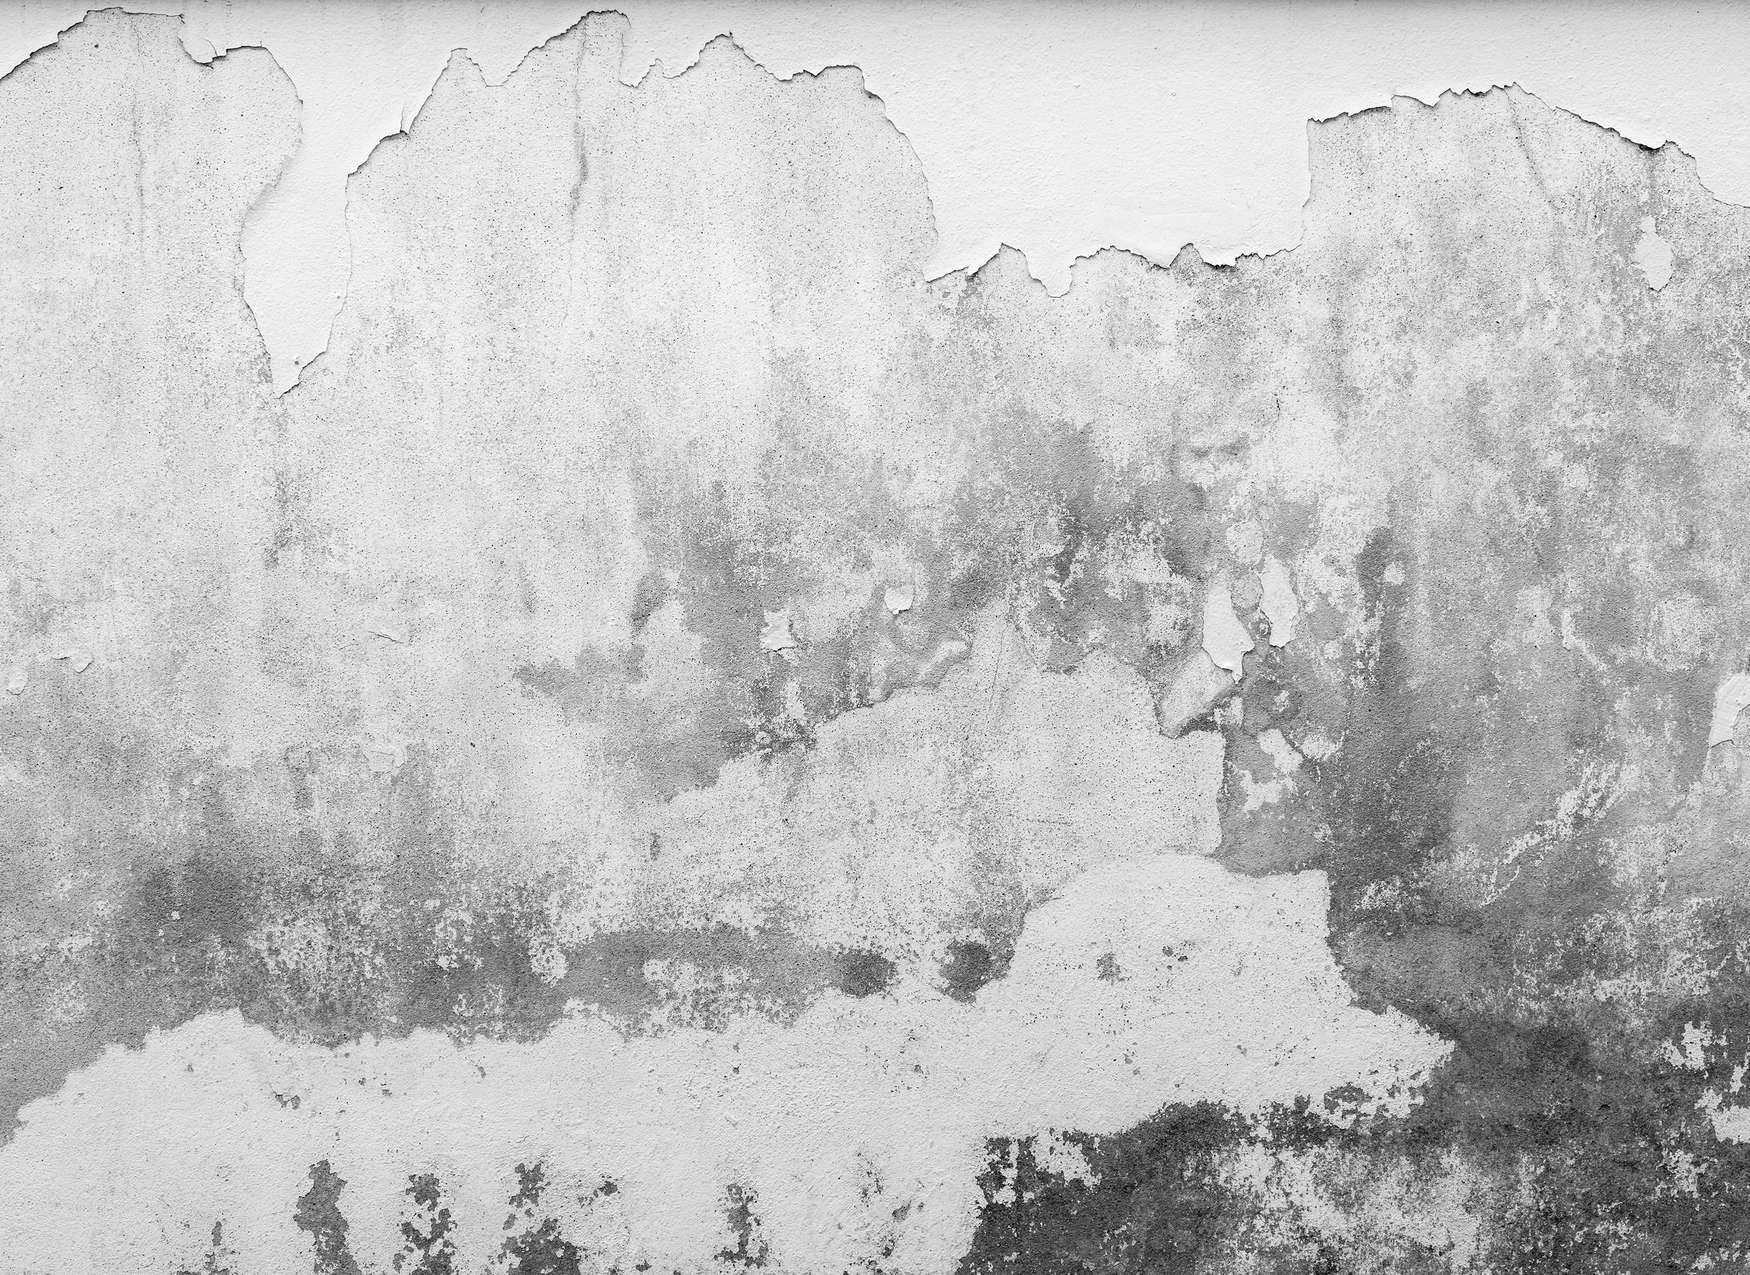             Muro di pietra in stile industriale usato - Bianco, grigio
        